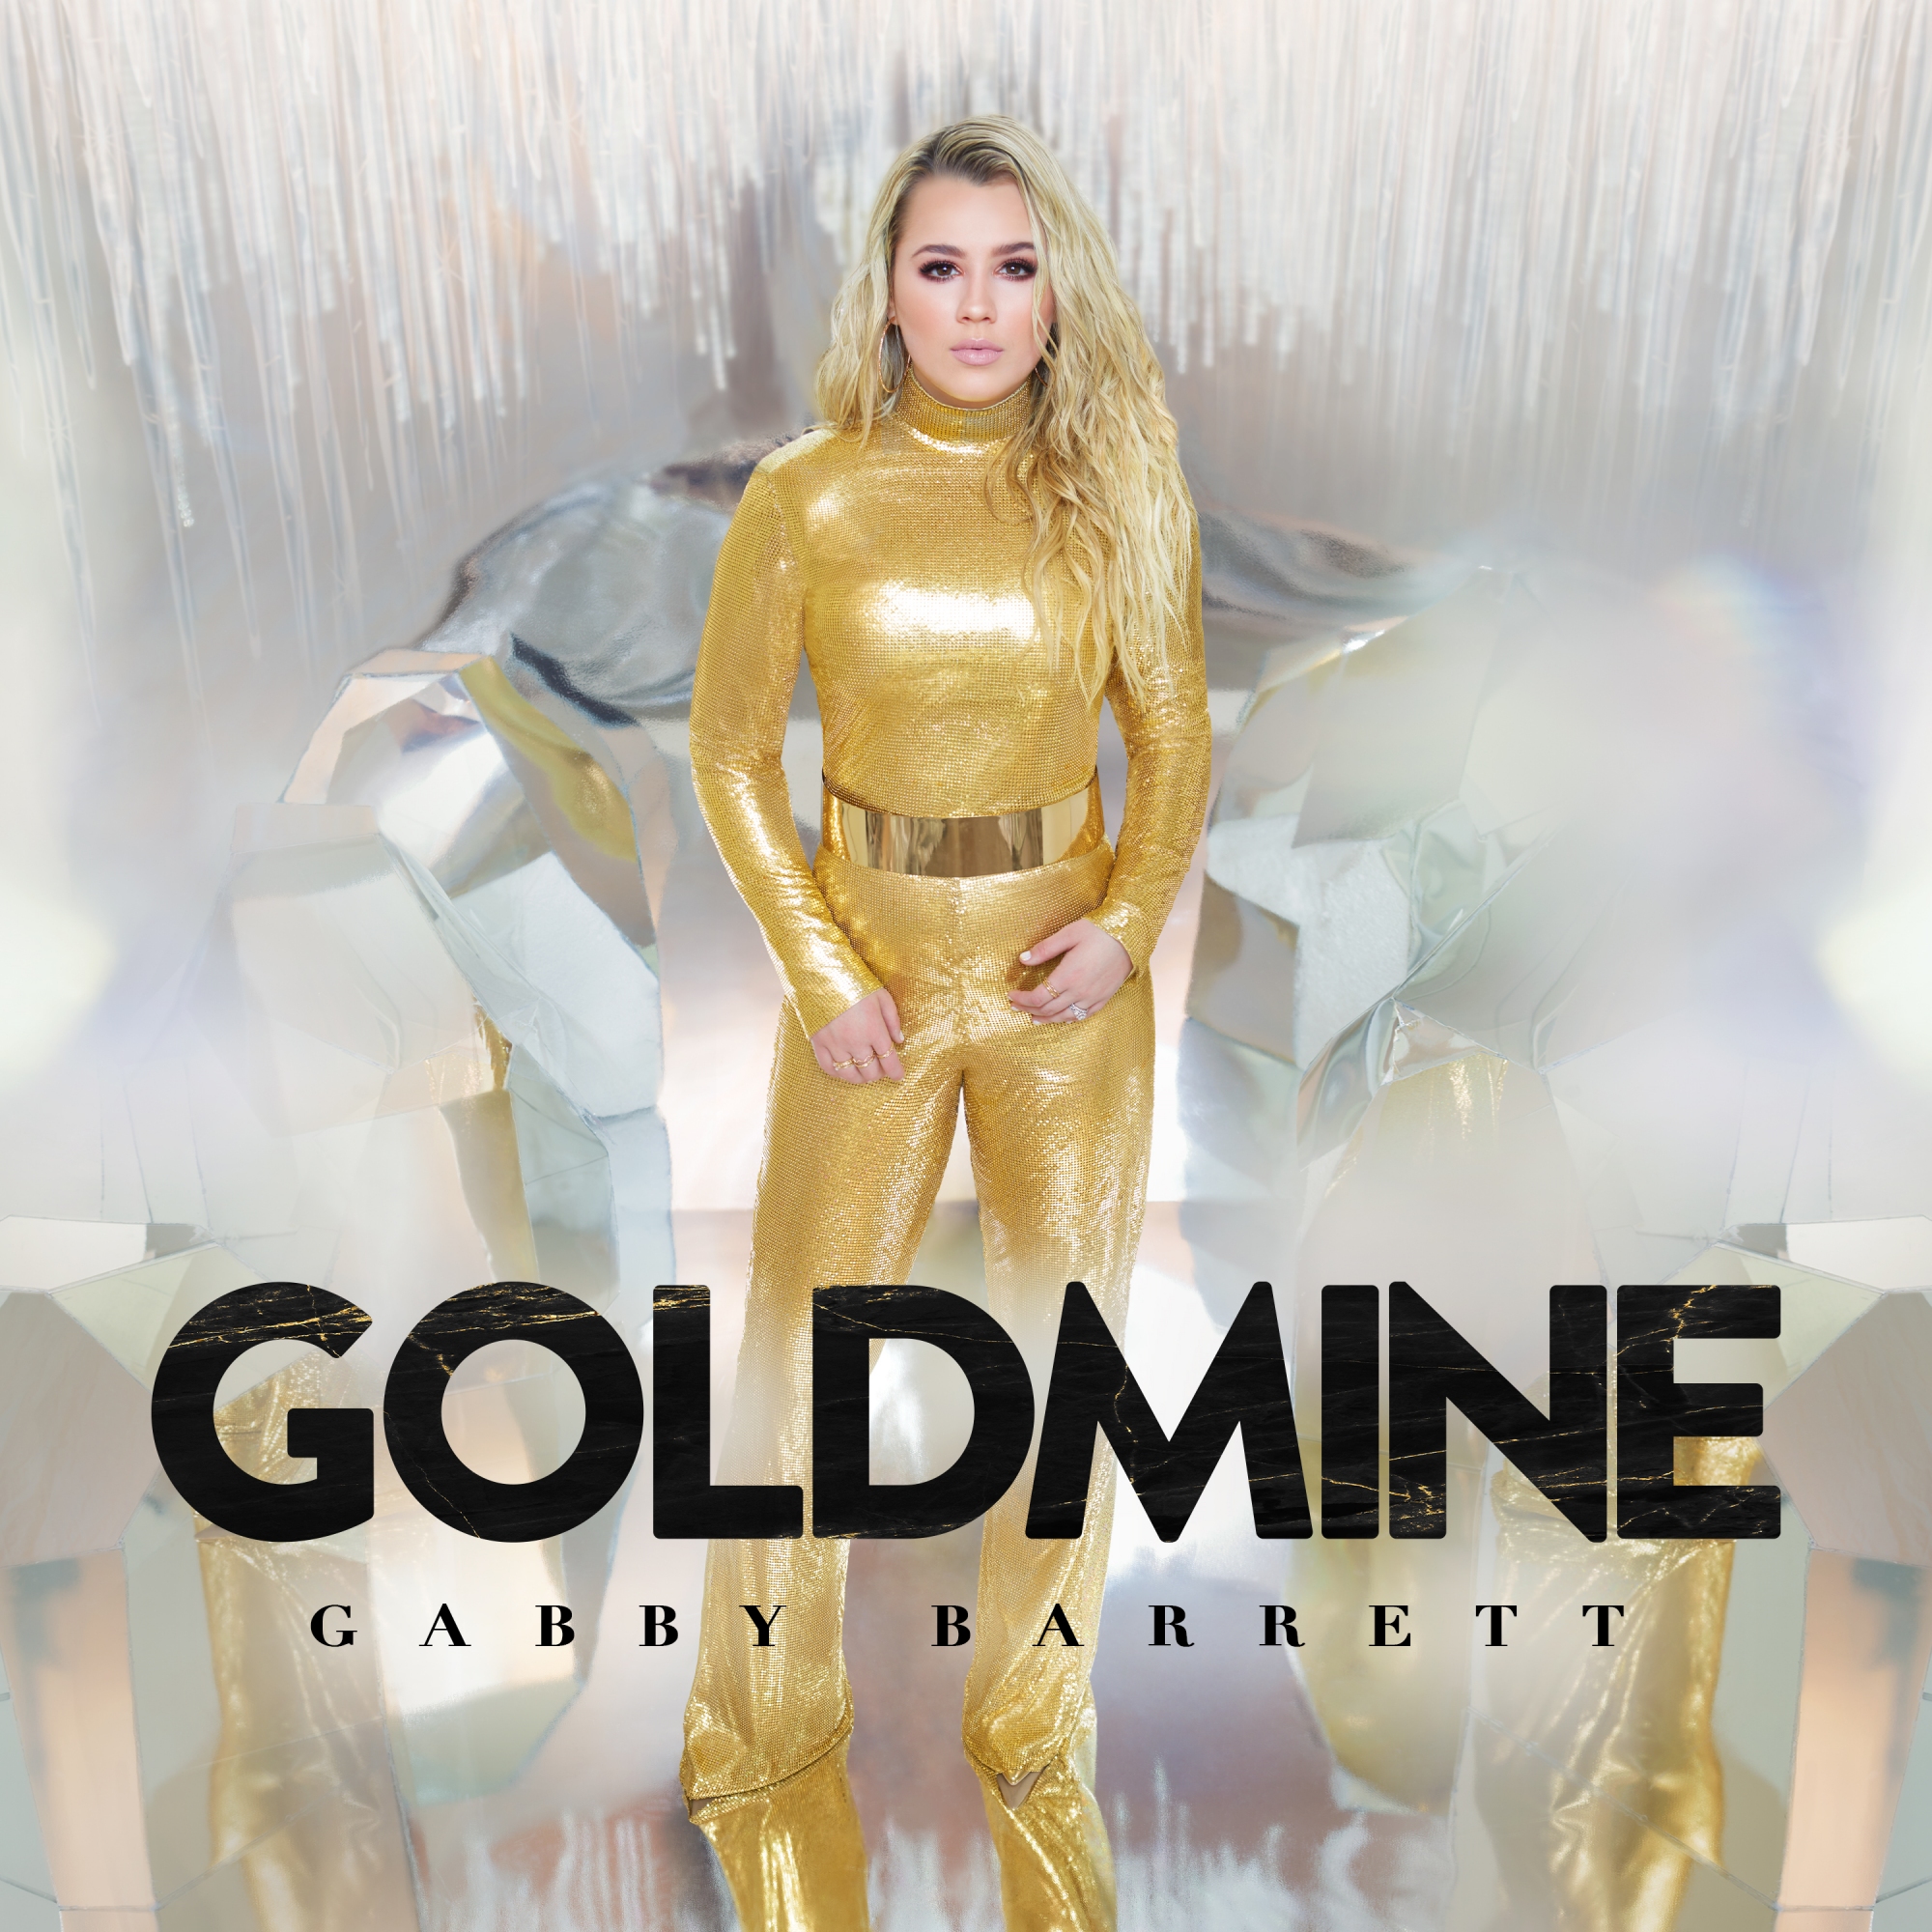 Gabby Barrett - Goldmine (Cover Artwork)
Release date: June 19, 2020 
Label: Warner Music Nashville
